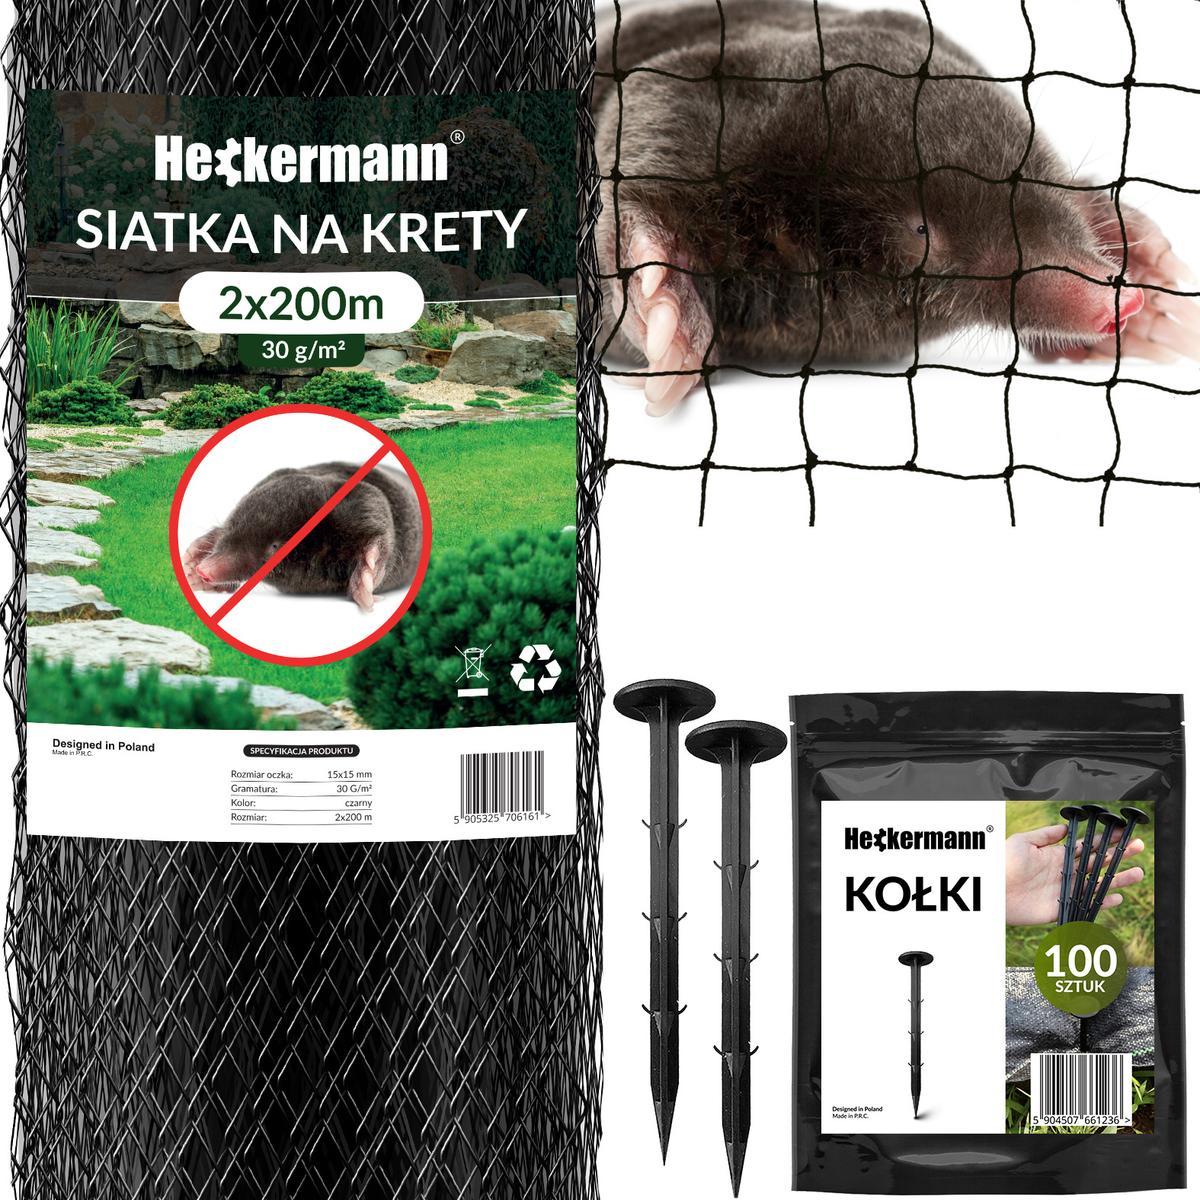 Zestaw Siatka na krety Heckermann 2x200m 30g/m2 + Kołki Czarne 100 szt nr. 1